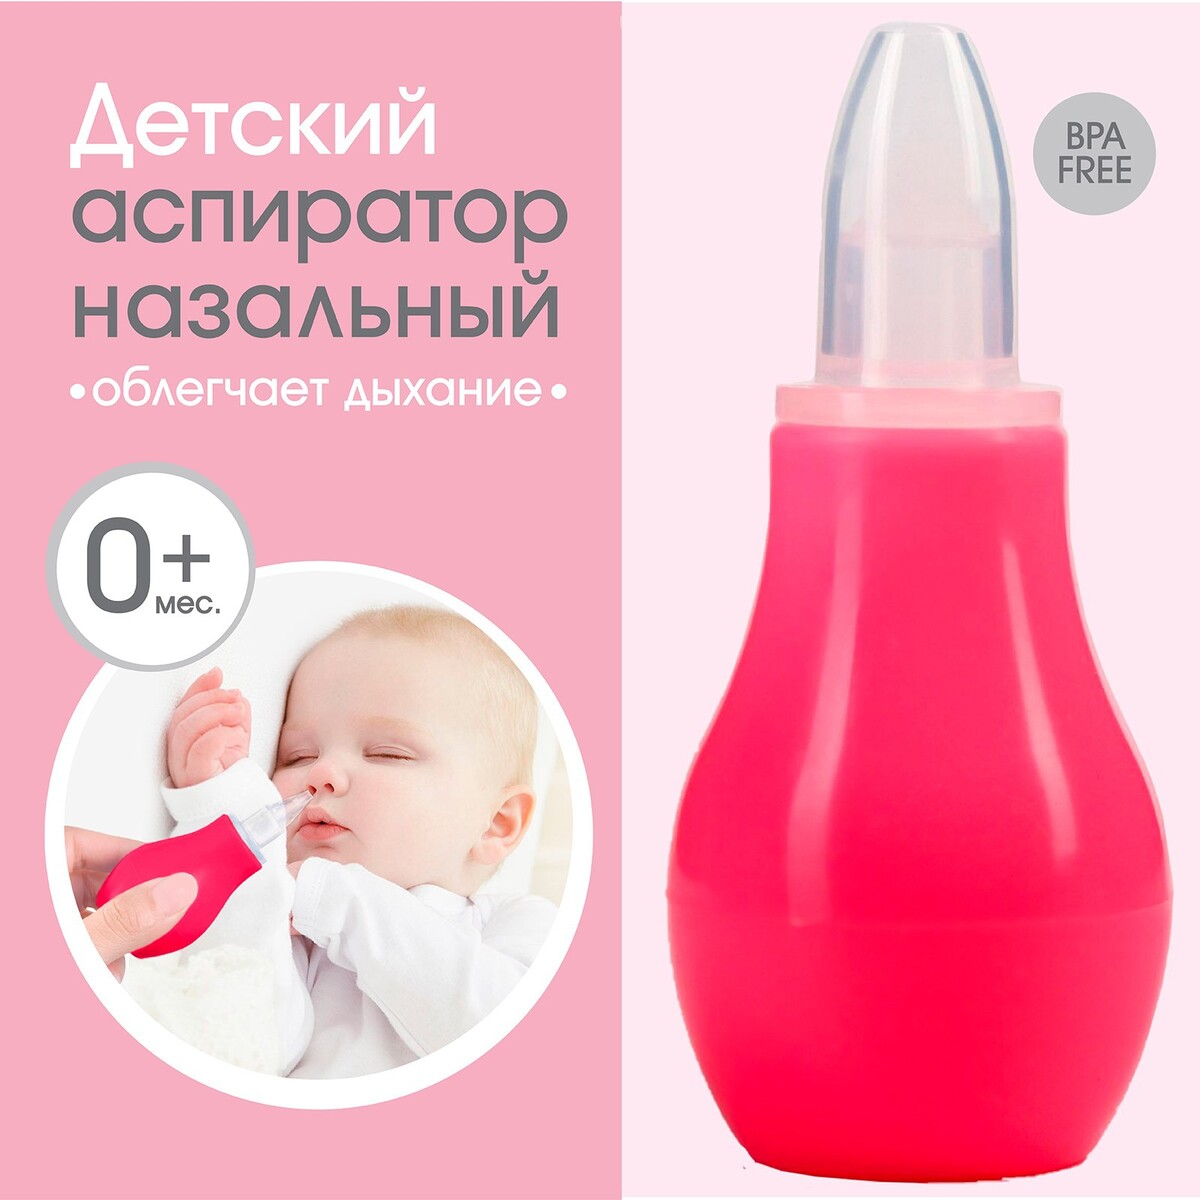 Детский назальный аспиратор, с колпачком, цвет розовый аспиратор baby vac назальный детский